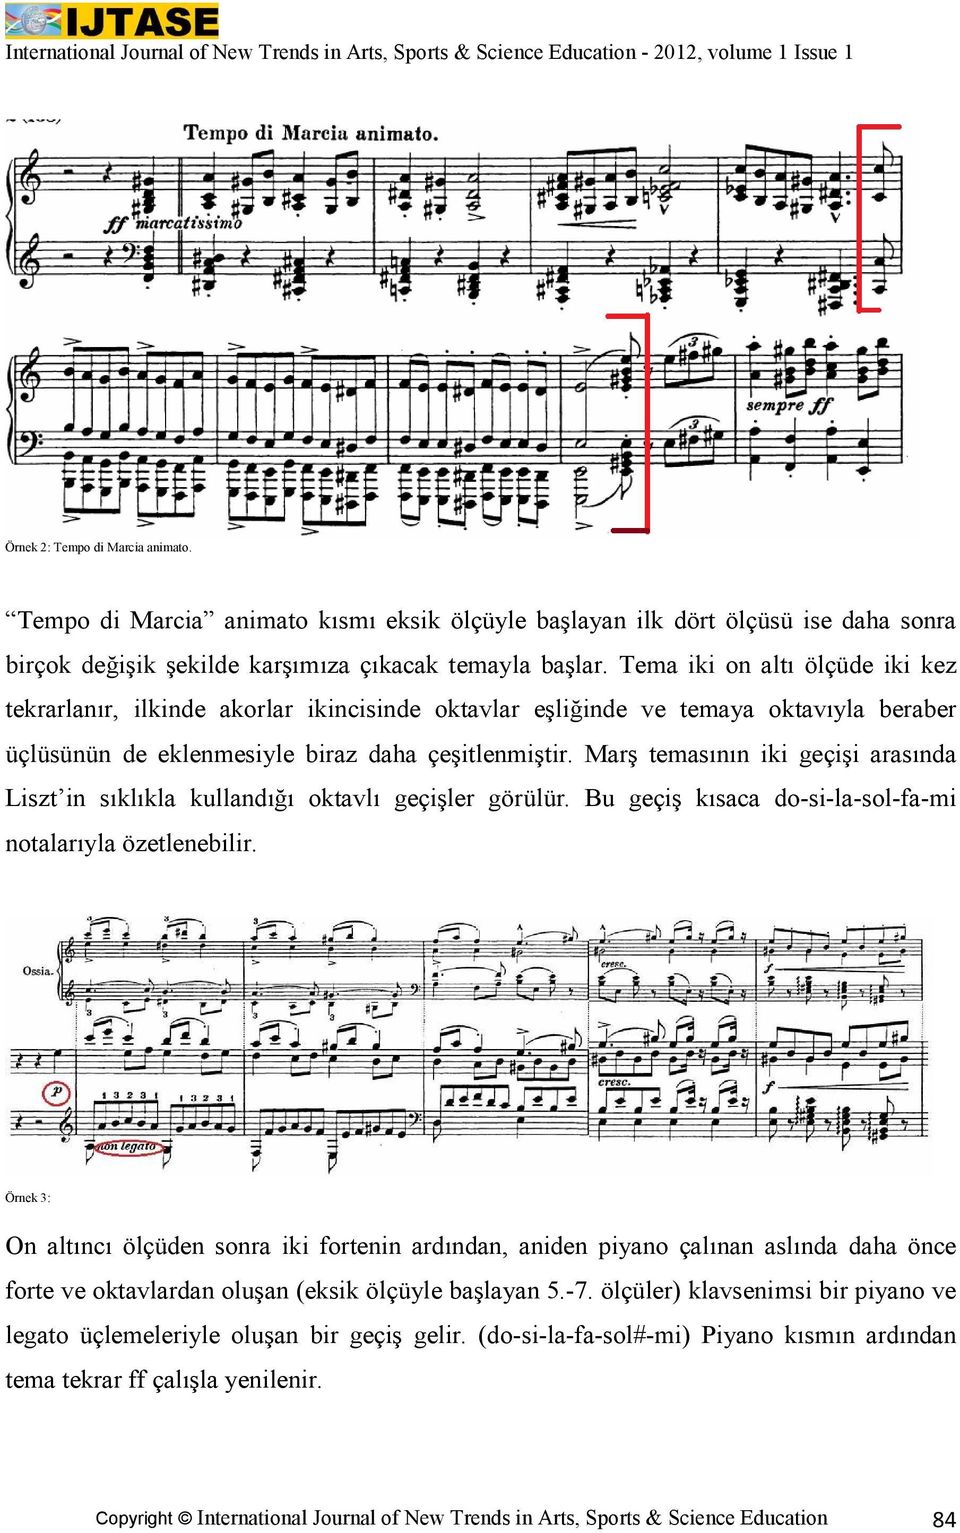 Marş temasının iki geçişi arasında Liszt in sıklıkla kullandığı oktavlı geçişler görülür. Bu geçiş kısaca do-si-la-sol-fa-mi notalarıyla özetlenebilir.